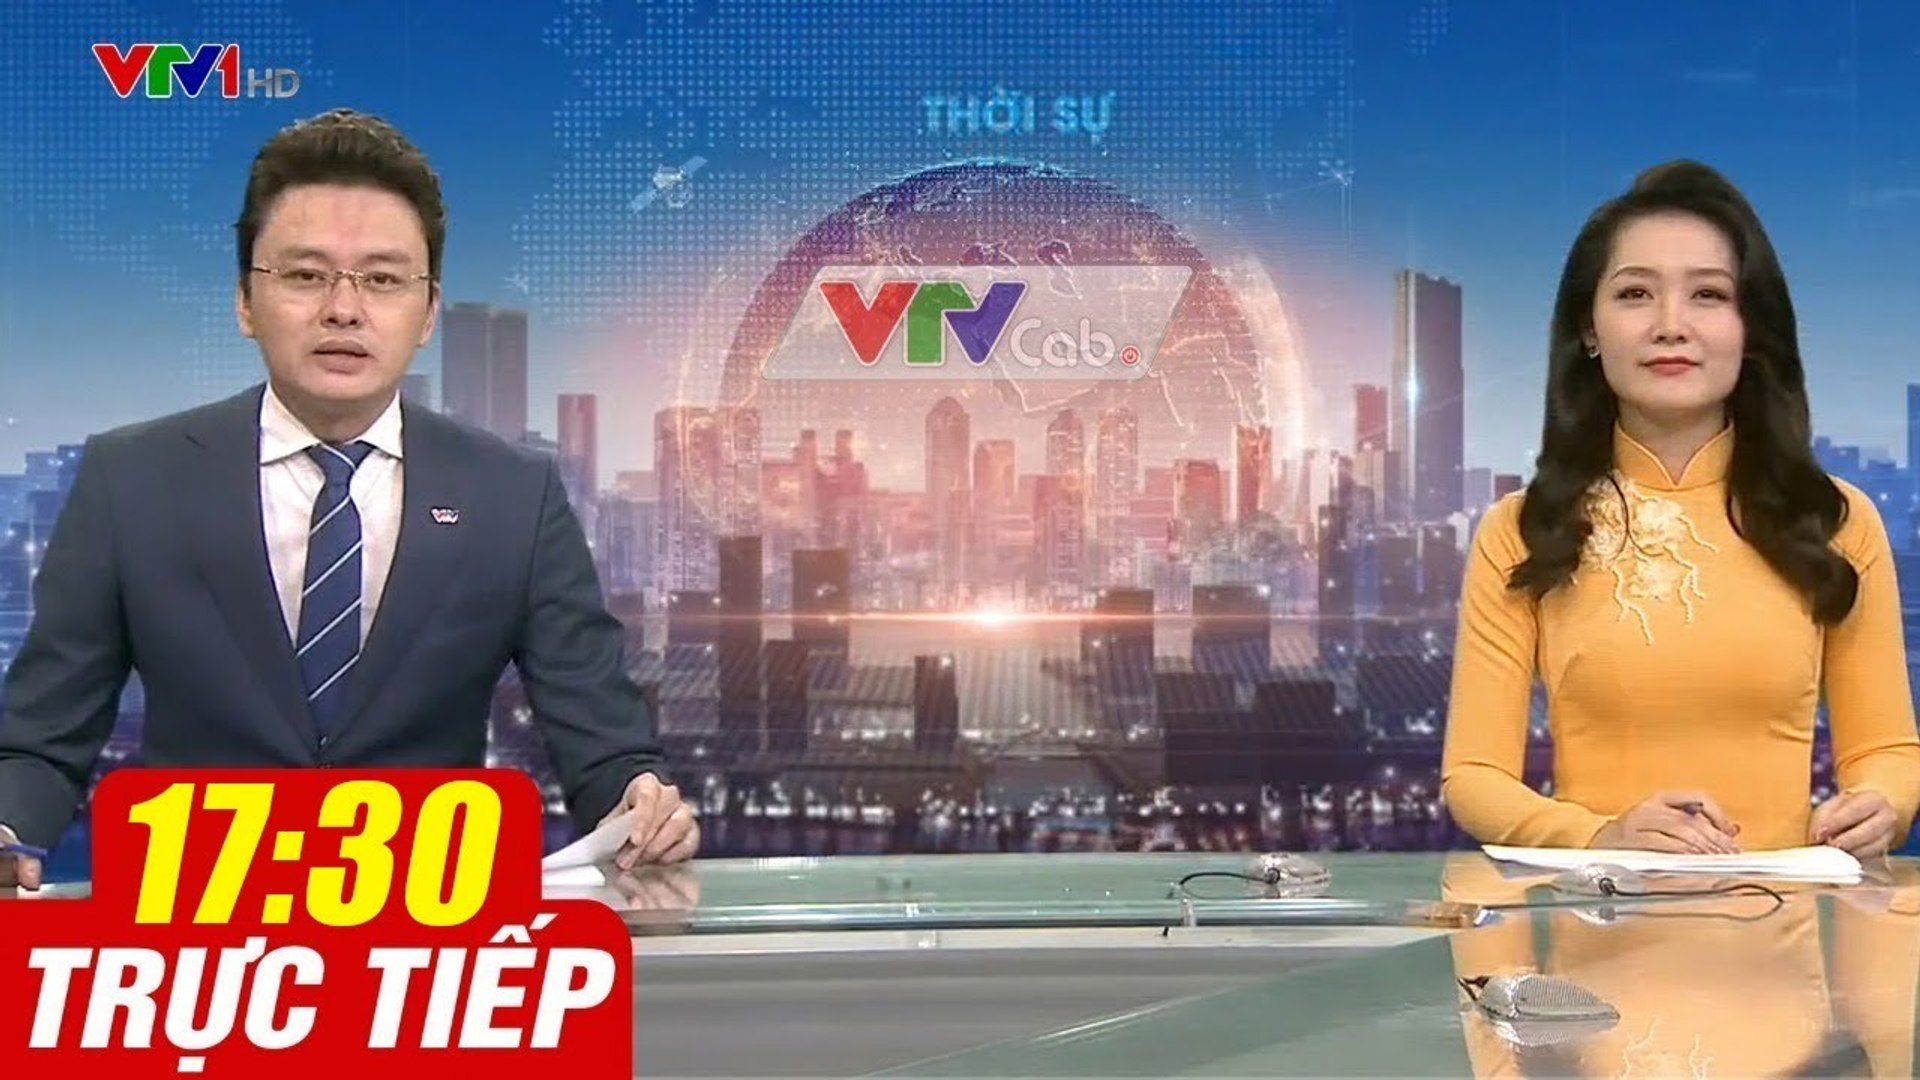 Trực Tiếp VIỆT NAM HÔM NAY 17h30 ngày 17.10.2020  Tin tức thời sự VTV1 mới nhất hôm nay